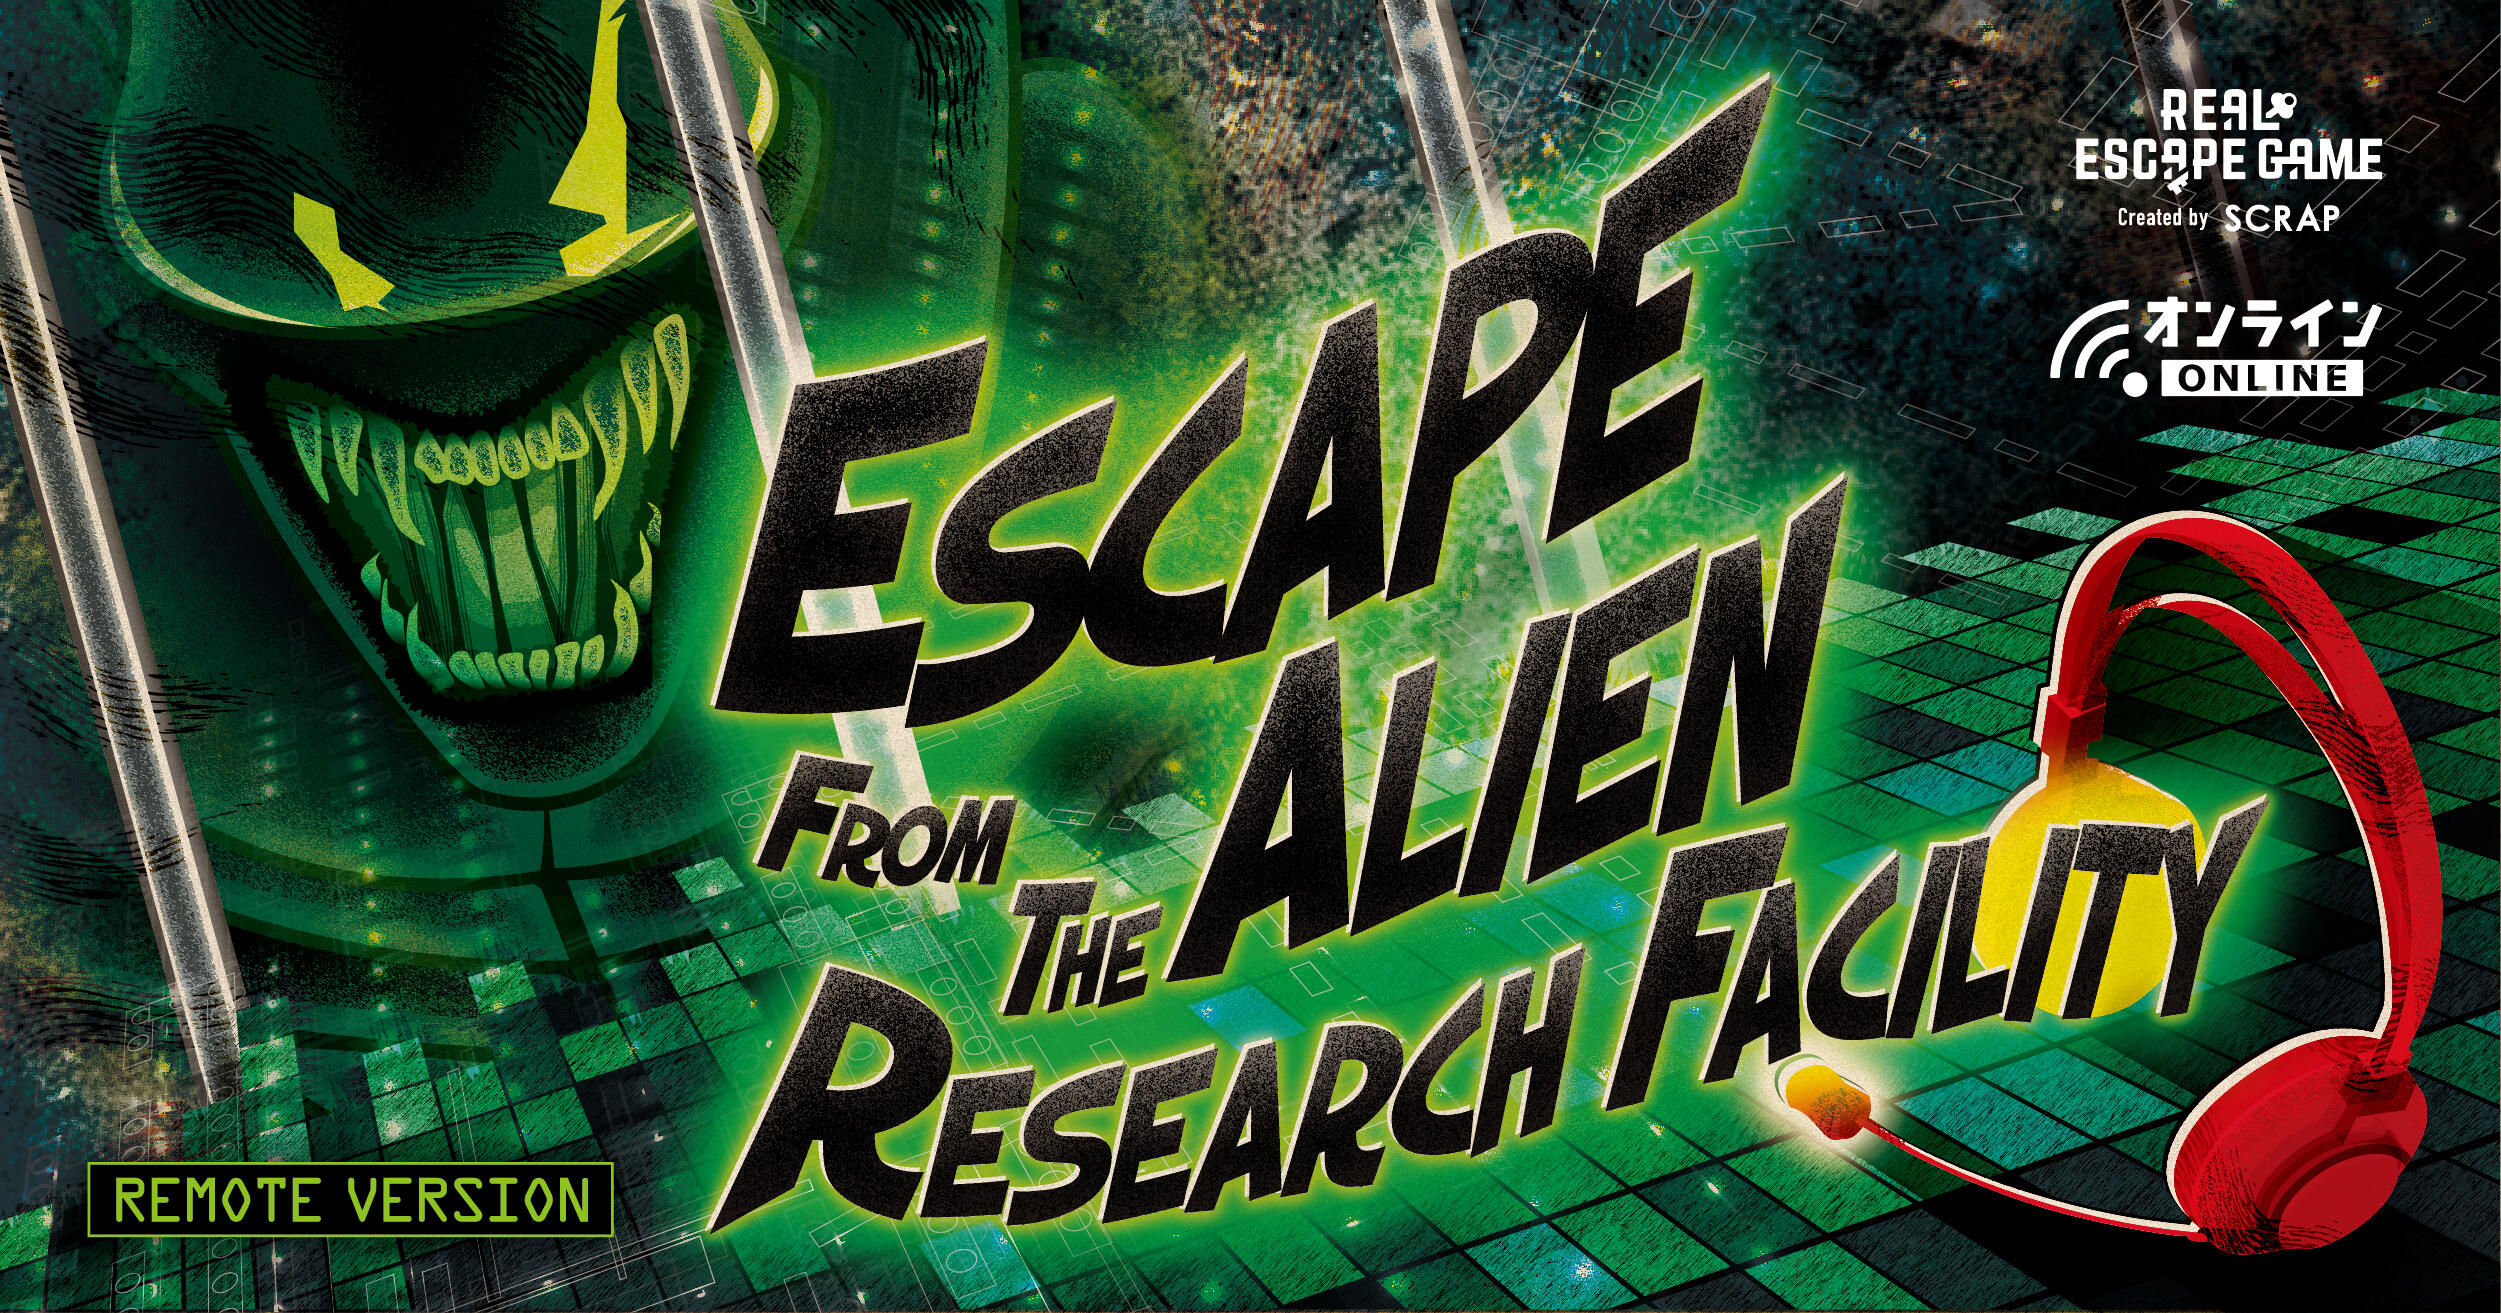 Escape from the Alien Researche center